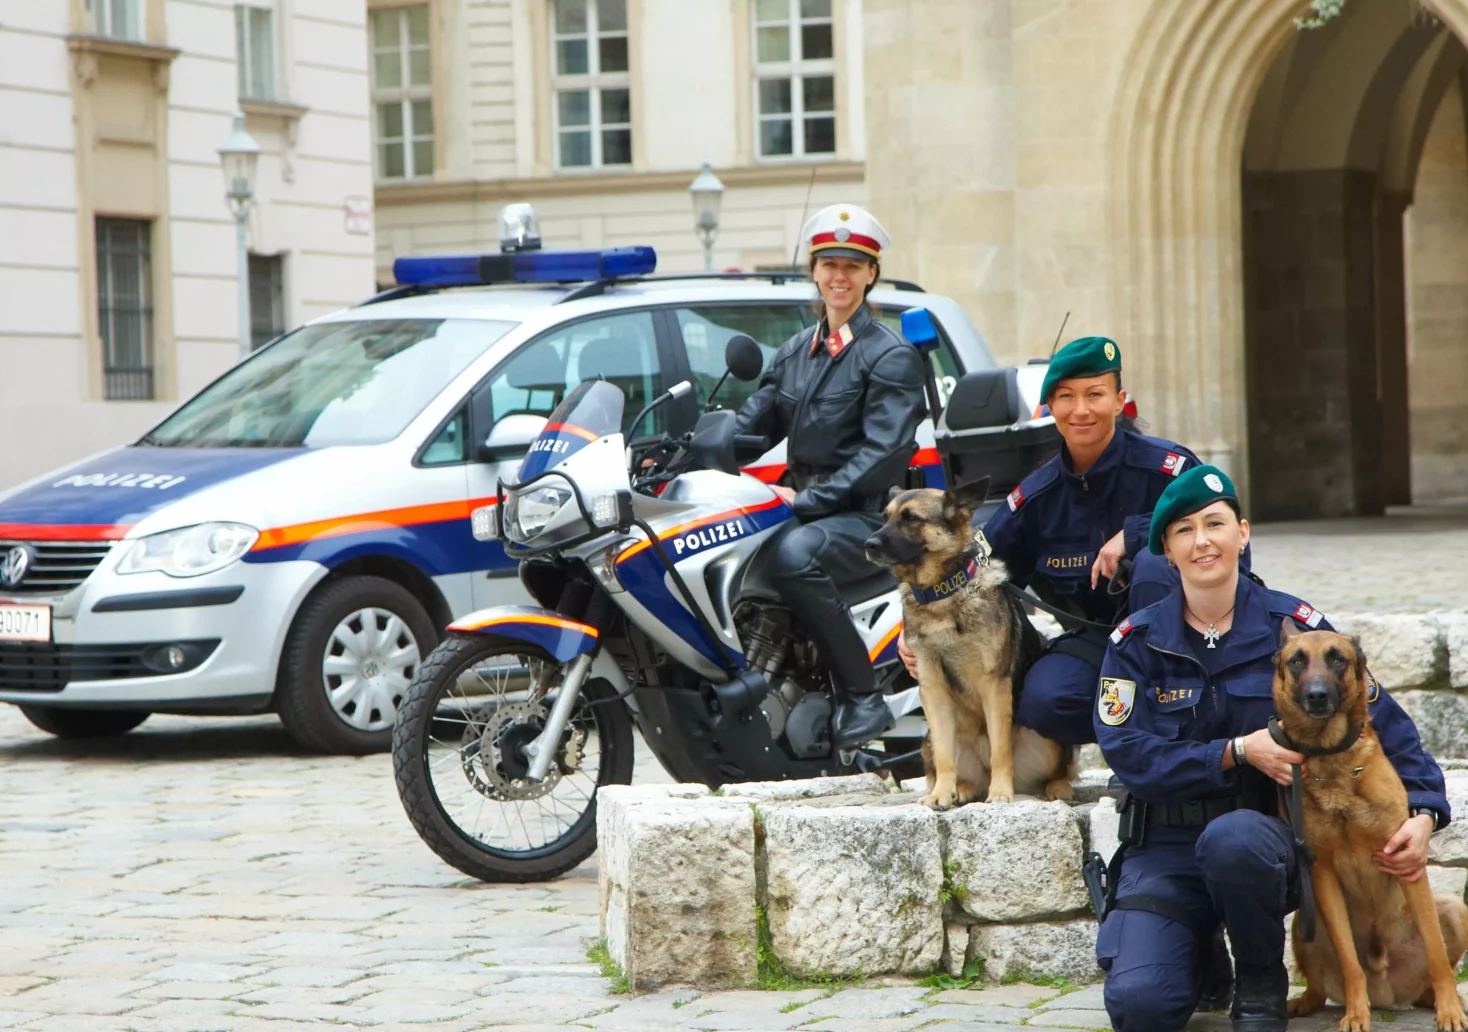 Bild auf 5min.at zeigt drei Polizistinnen und einen Hund.